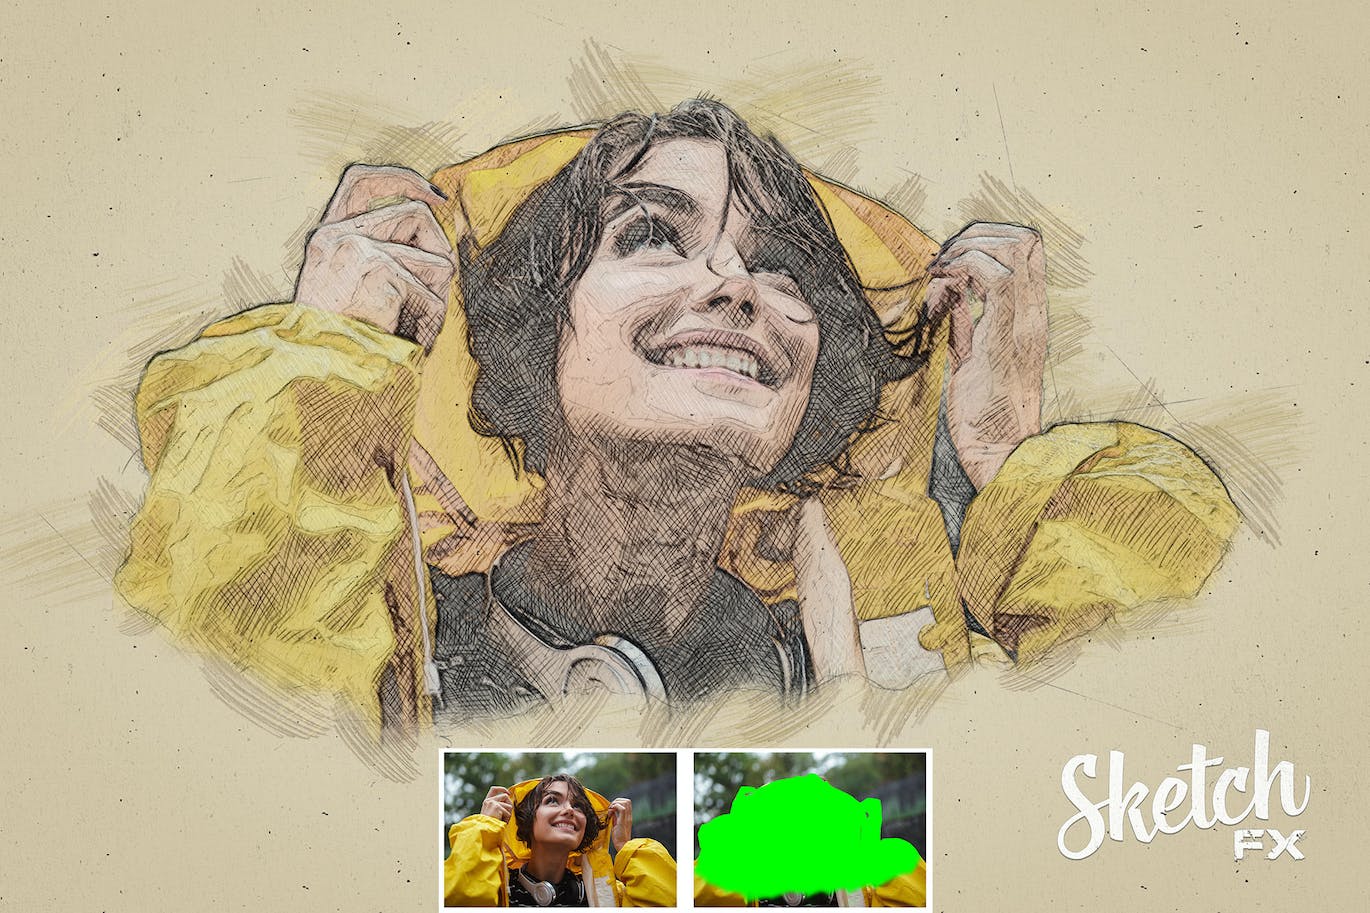 素描FX-照片效果PS插件 Sketch FX – Photo Effect Plugin 插件预设 第15张